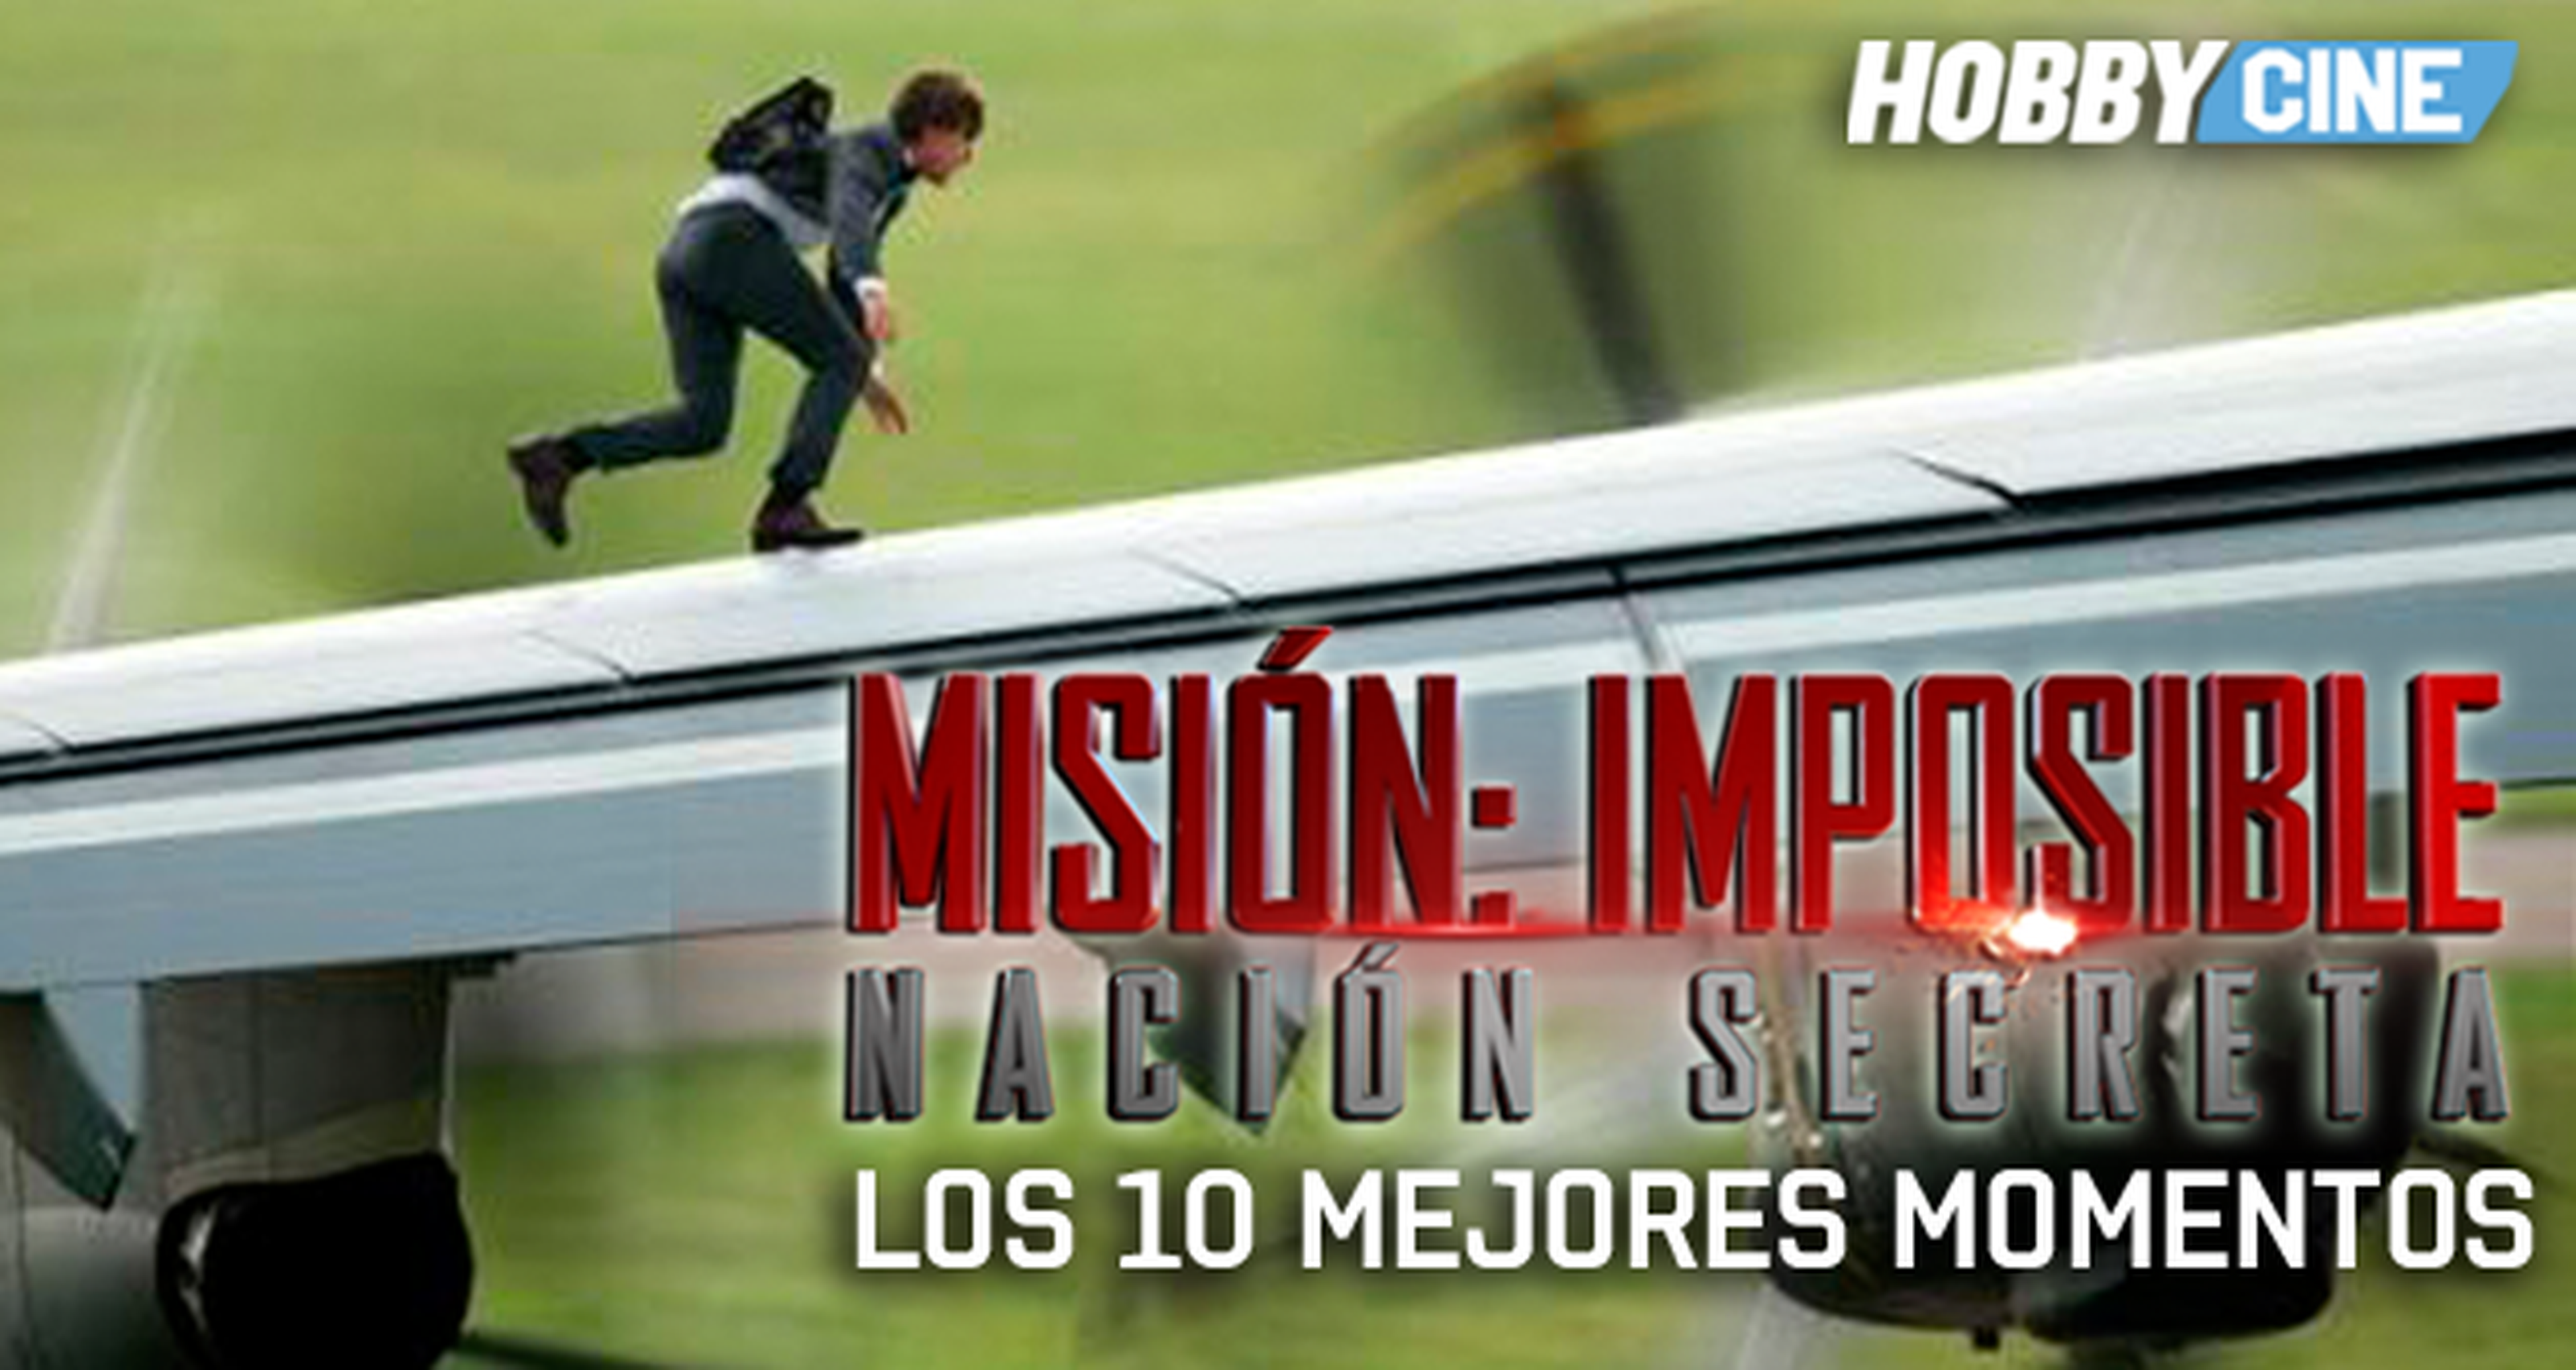 Los 10 mejores momentos de Misión imposible: nación secreta